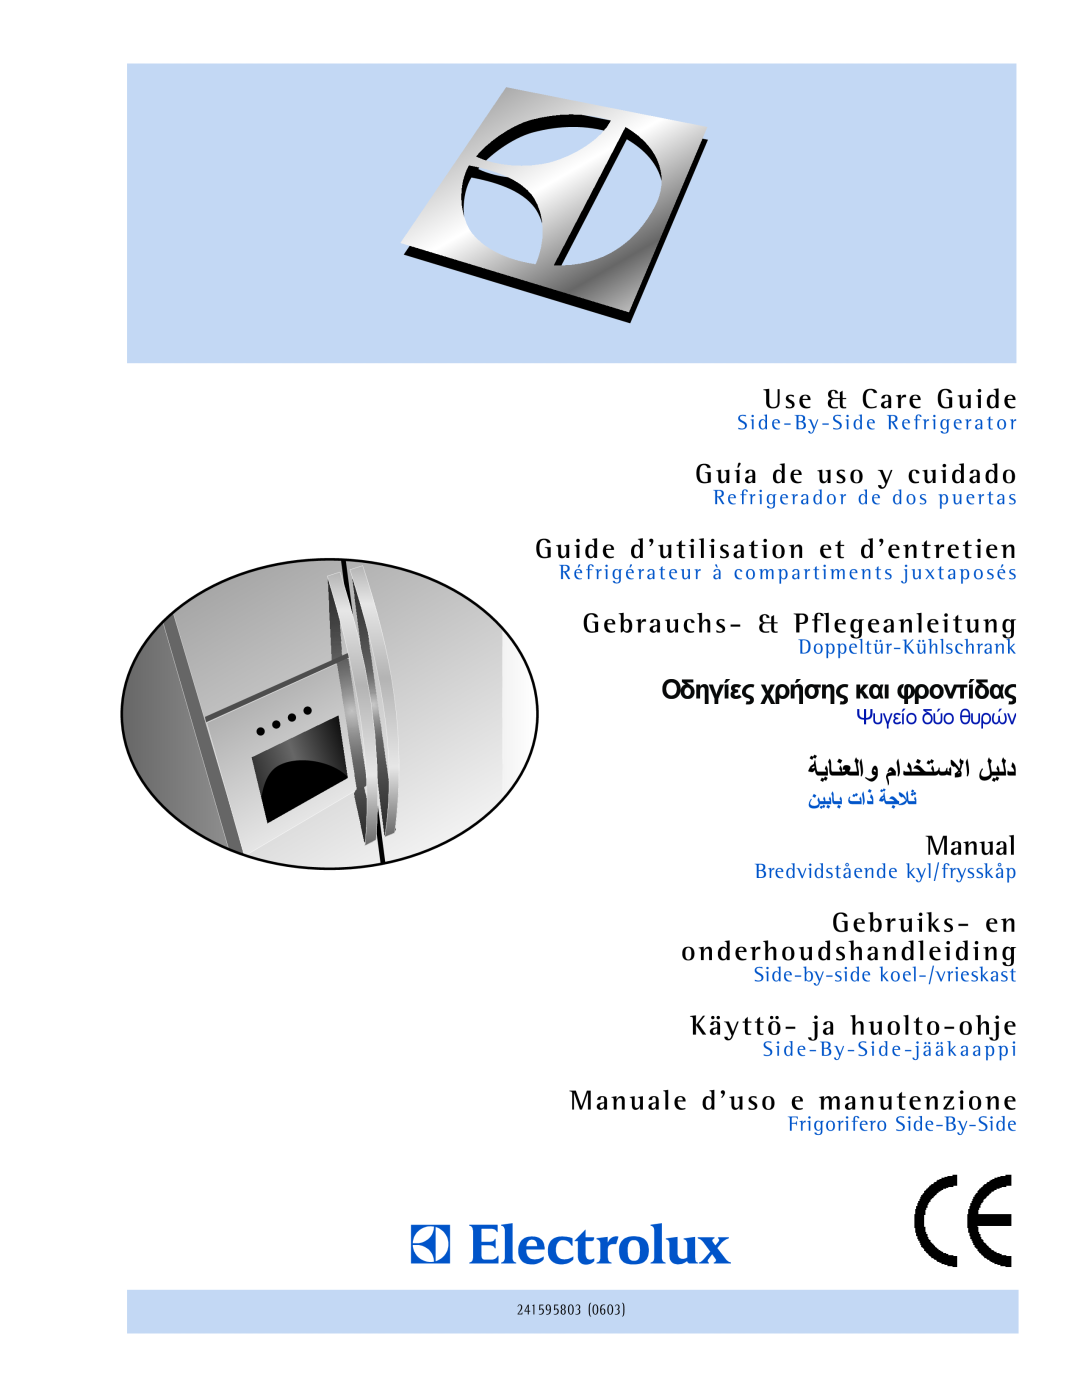 Electrolux U30024 manual Use & Care Guide, Guía de uso y cuidado, Guide d’utilisation et d’entretien, Manual 